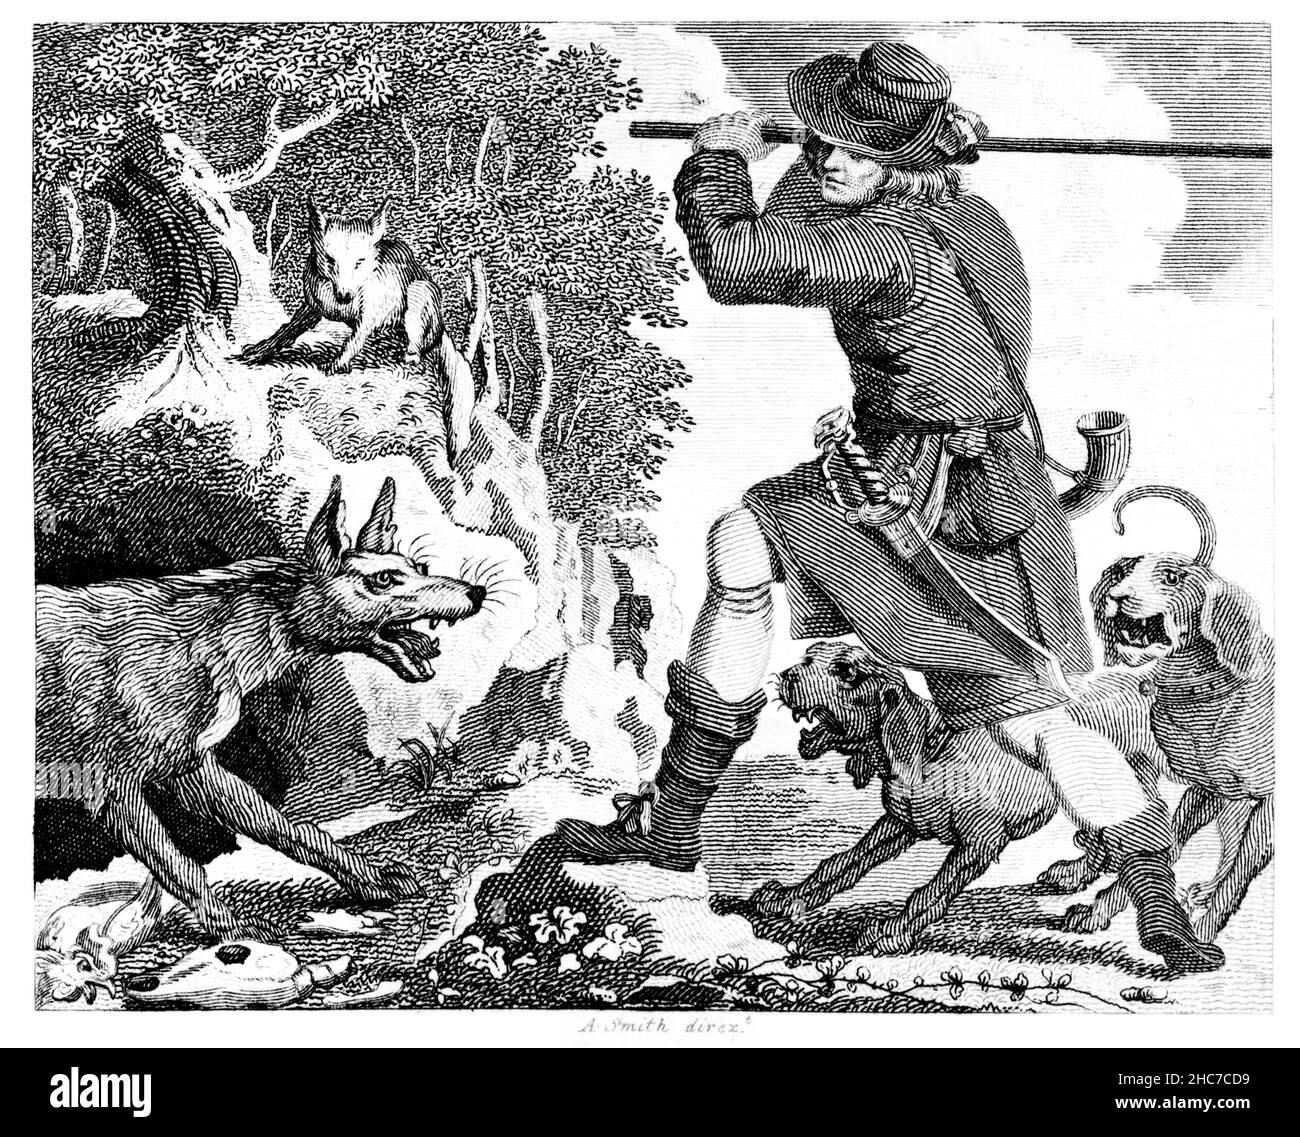 Illustrazione incisa della volpe e del lupo, con la morale, fidarsi l’un l’altro, dalla prima edizione del 1793 delle Favole di Aesop di Stockdale Foto Stock